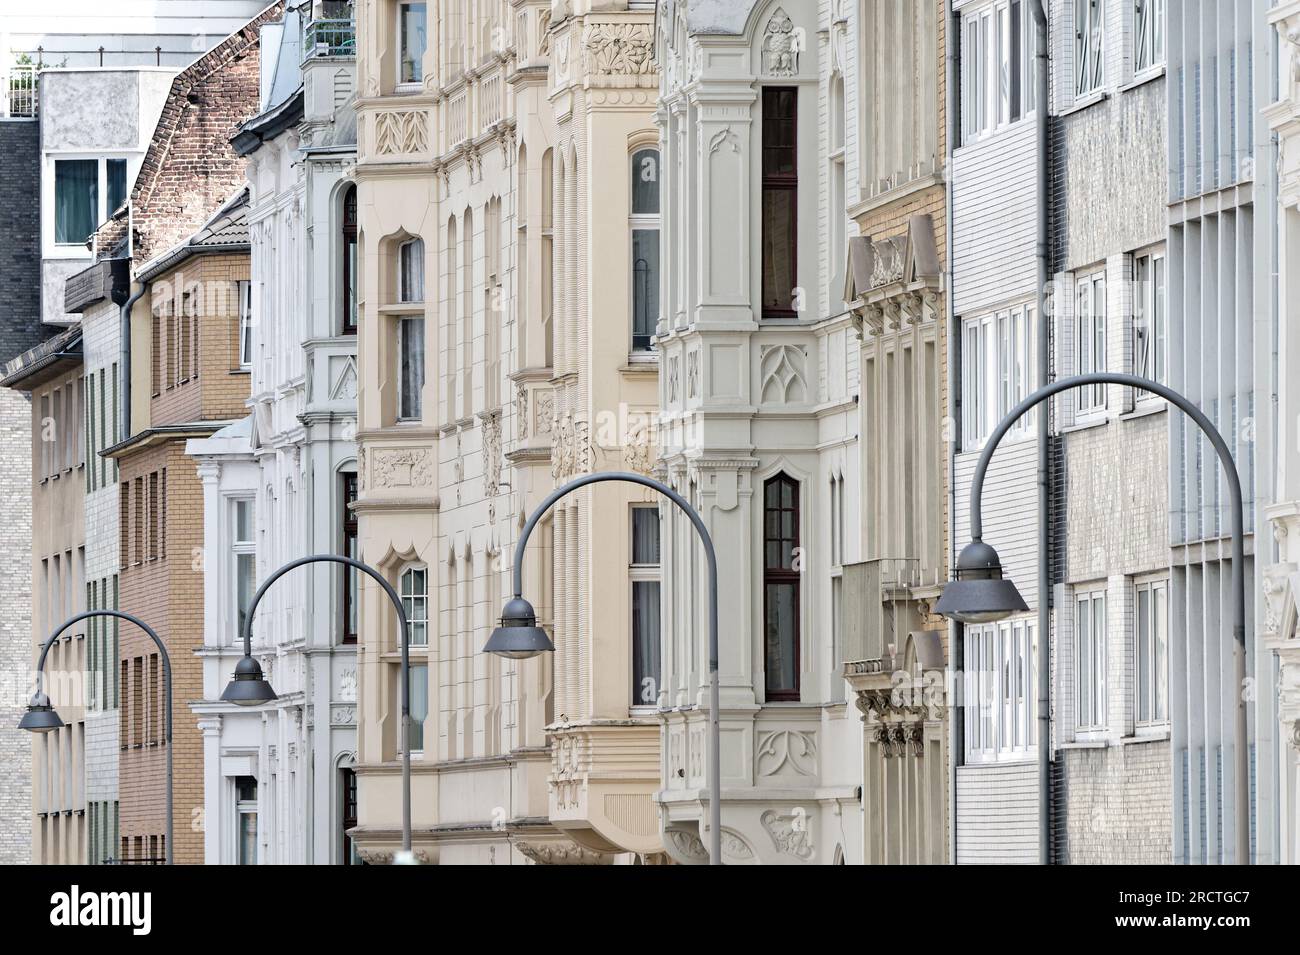 façades de maisons gruenderzeit ornementées de la fin du 19e siècle dans le quartier belge de cologne Banque D'Images